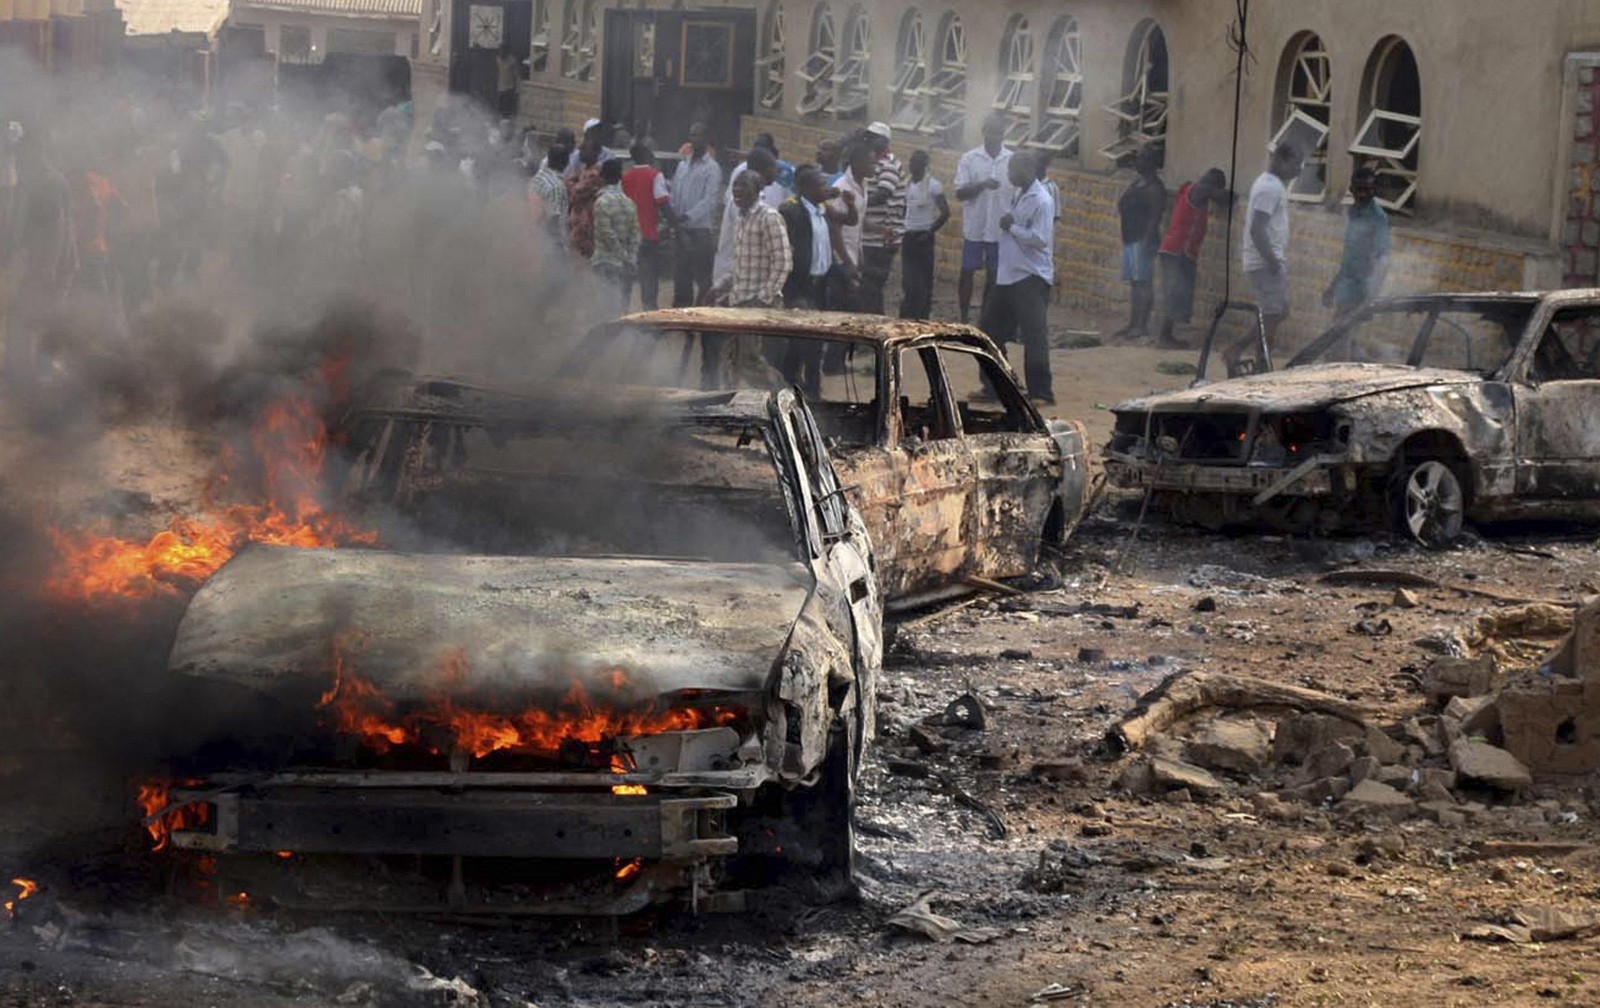 Los números de la PERSECUCIÓN A CRISTIANOS EN NIGERIA: 11.500 asesinados, 13 mil iglesias destruidas, 1 millón de desplazados…